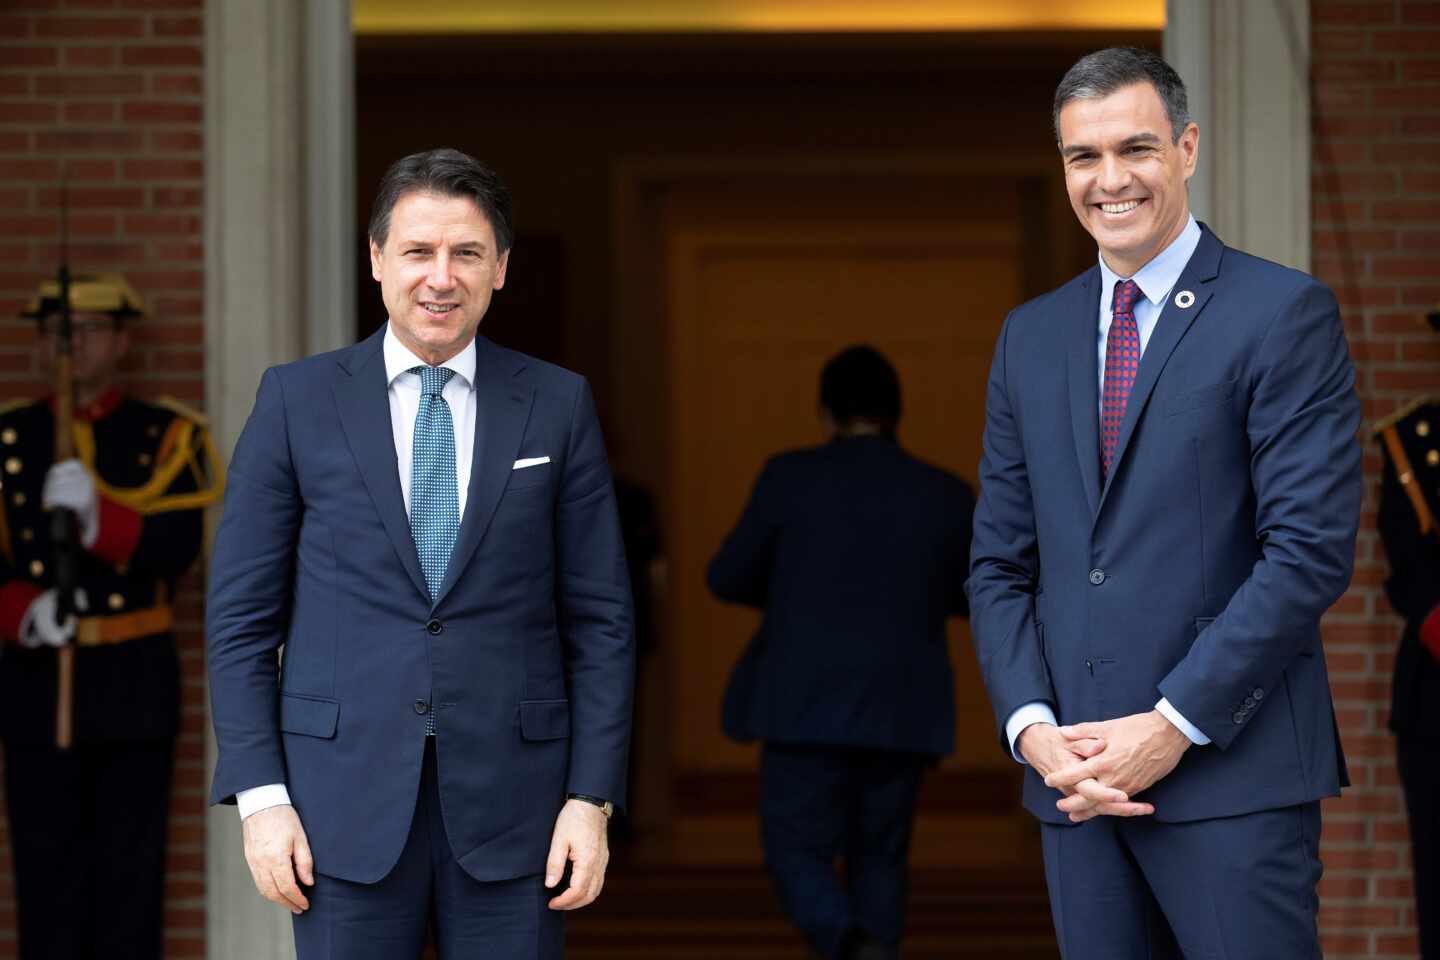 El presidente del Gobierno, Pedro Sánchez, recibe al primer ministro italiano, Giuseppe Conte, en el Palacio de la Moncloa